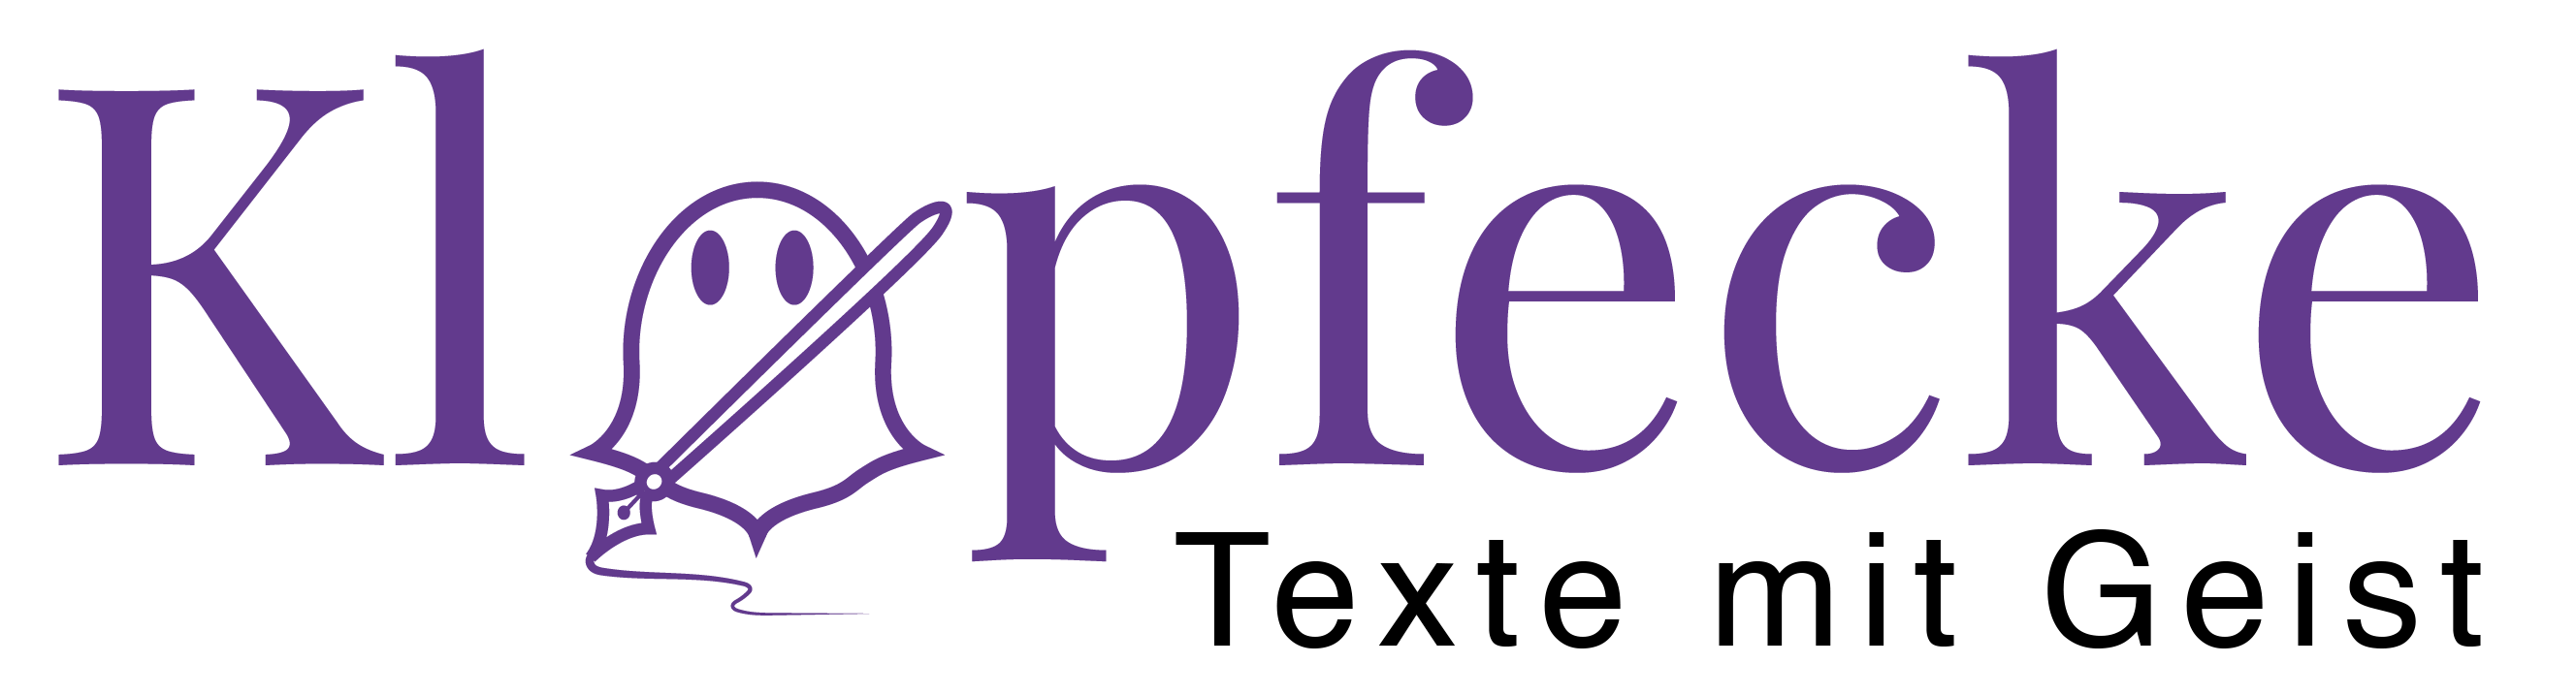 Logo von Klopfecke - Texte mit Geist